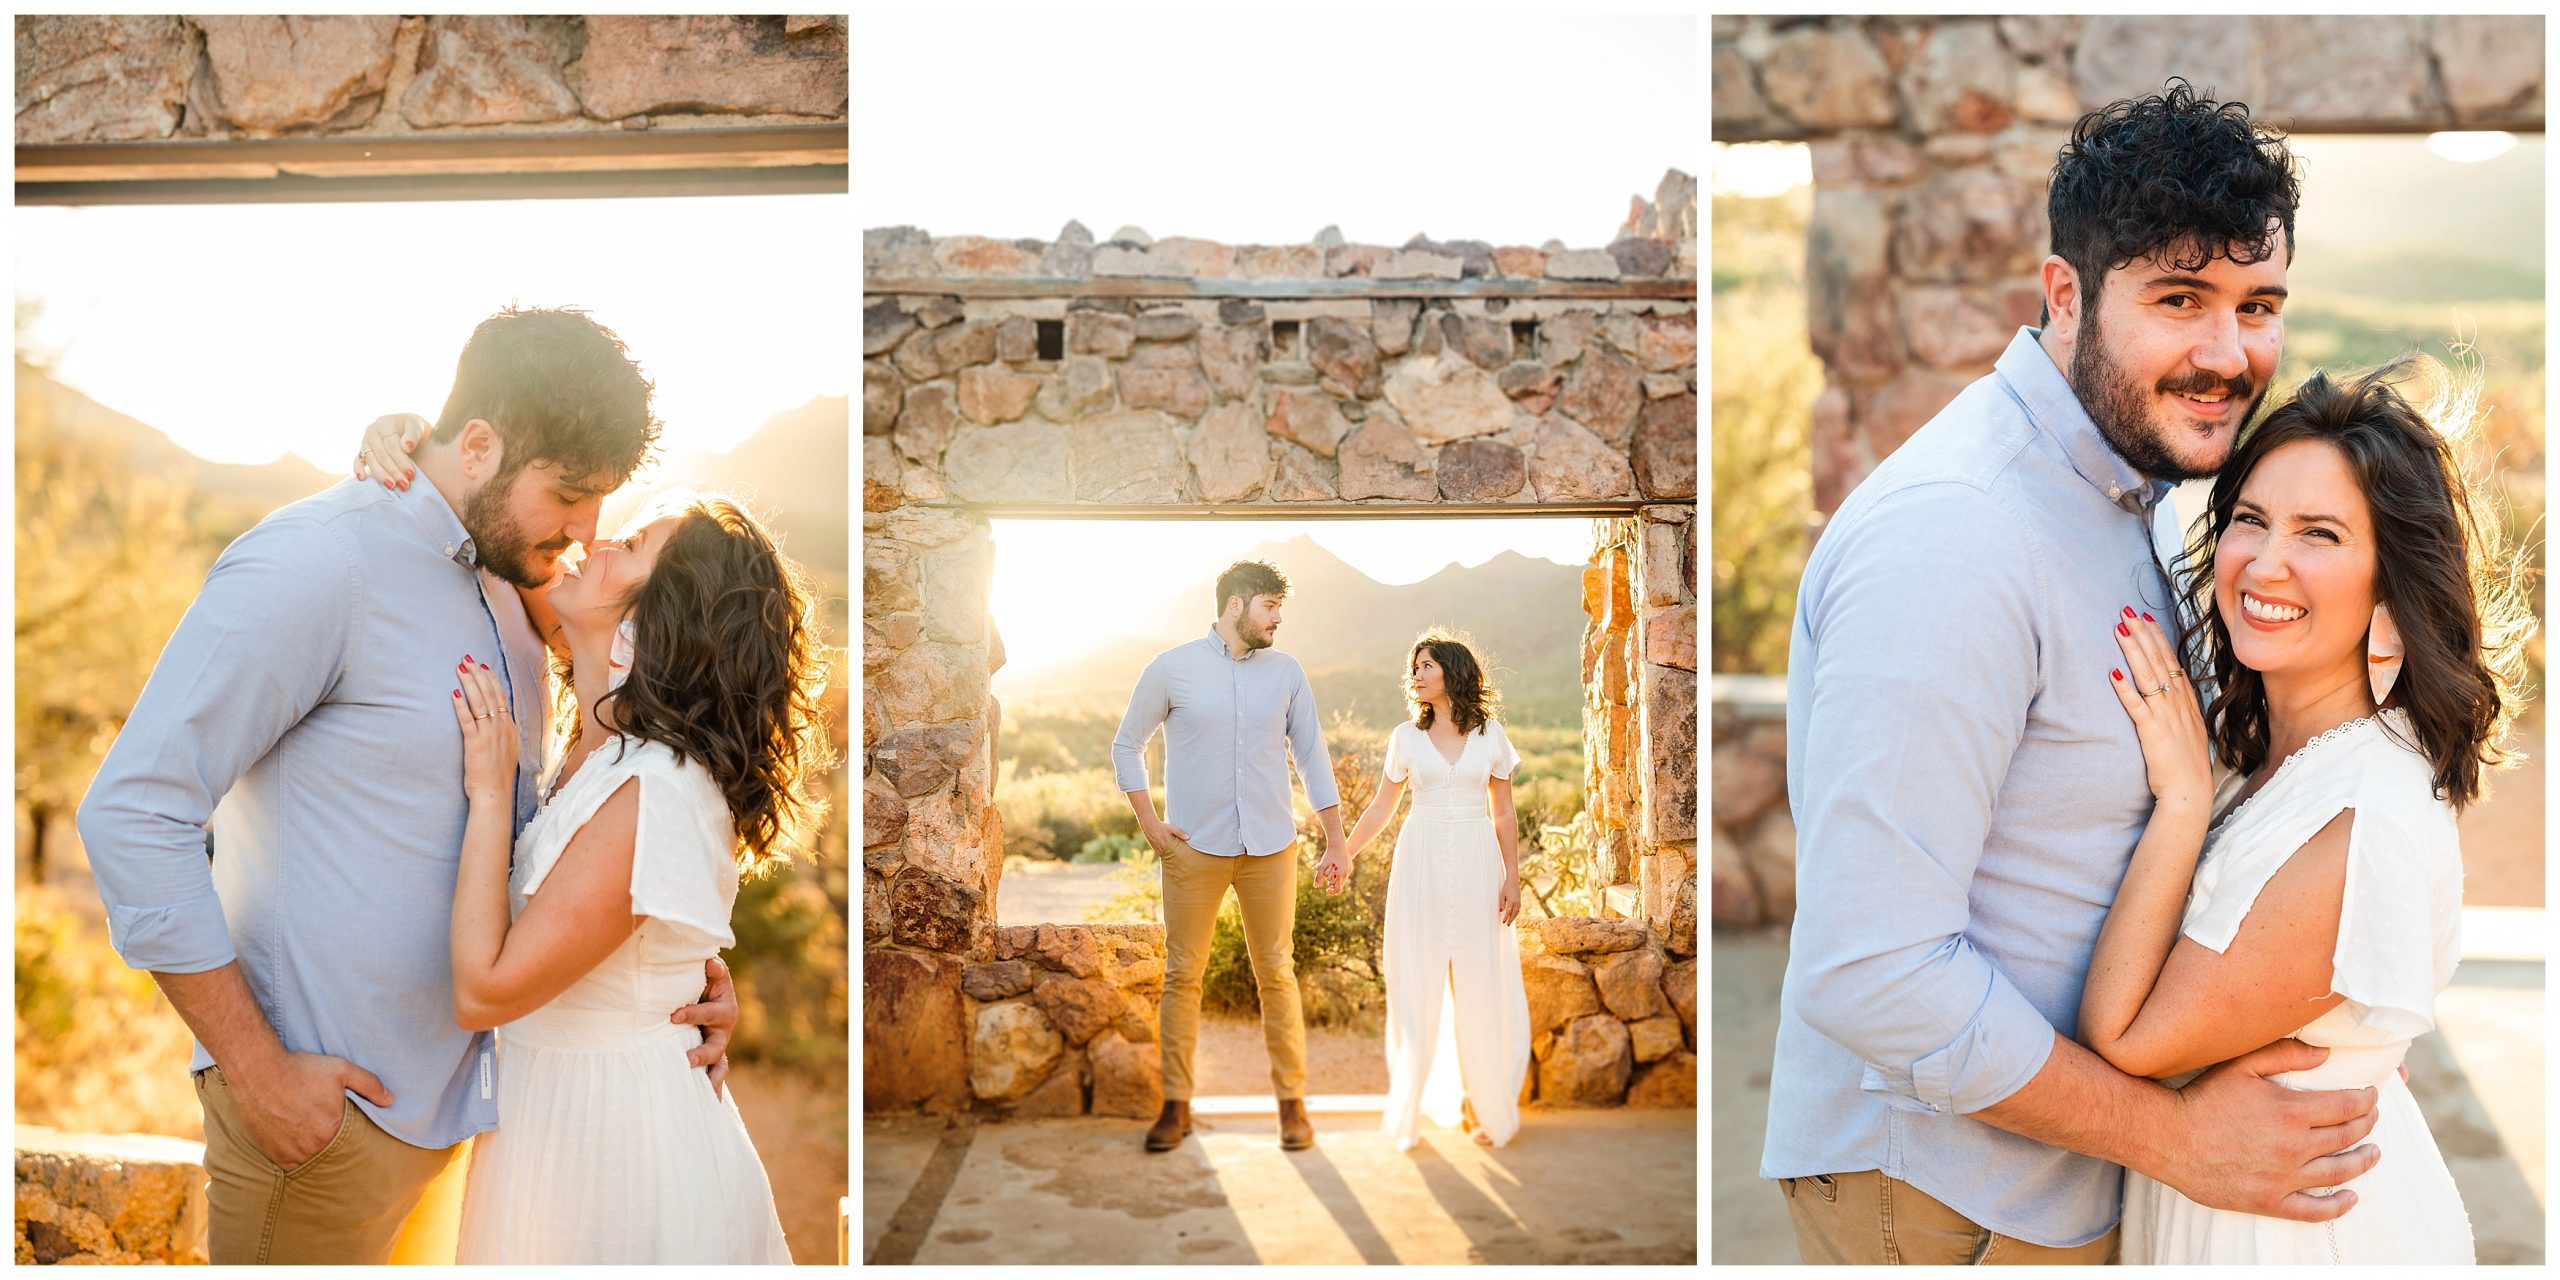 Wedding photographer captures couple in golden hour desert scenery